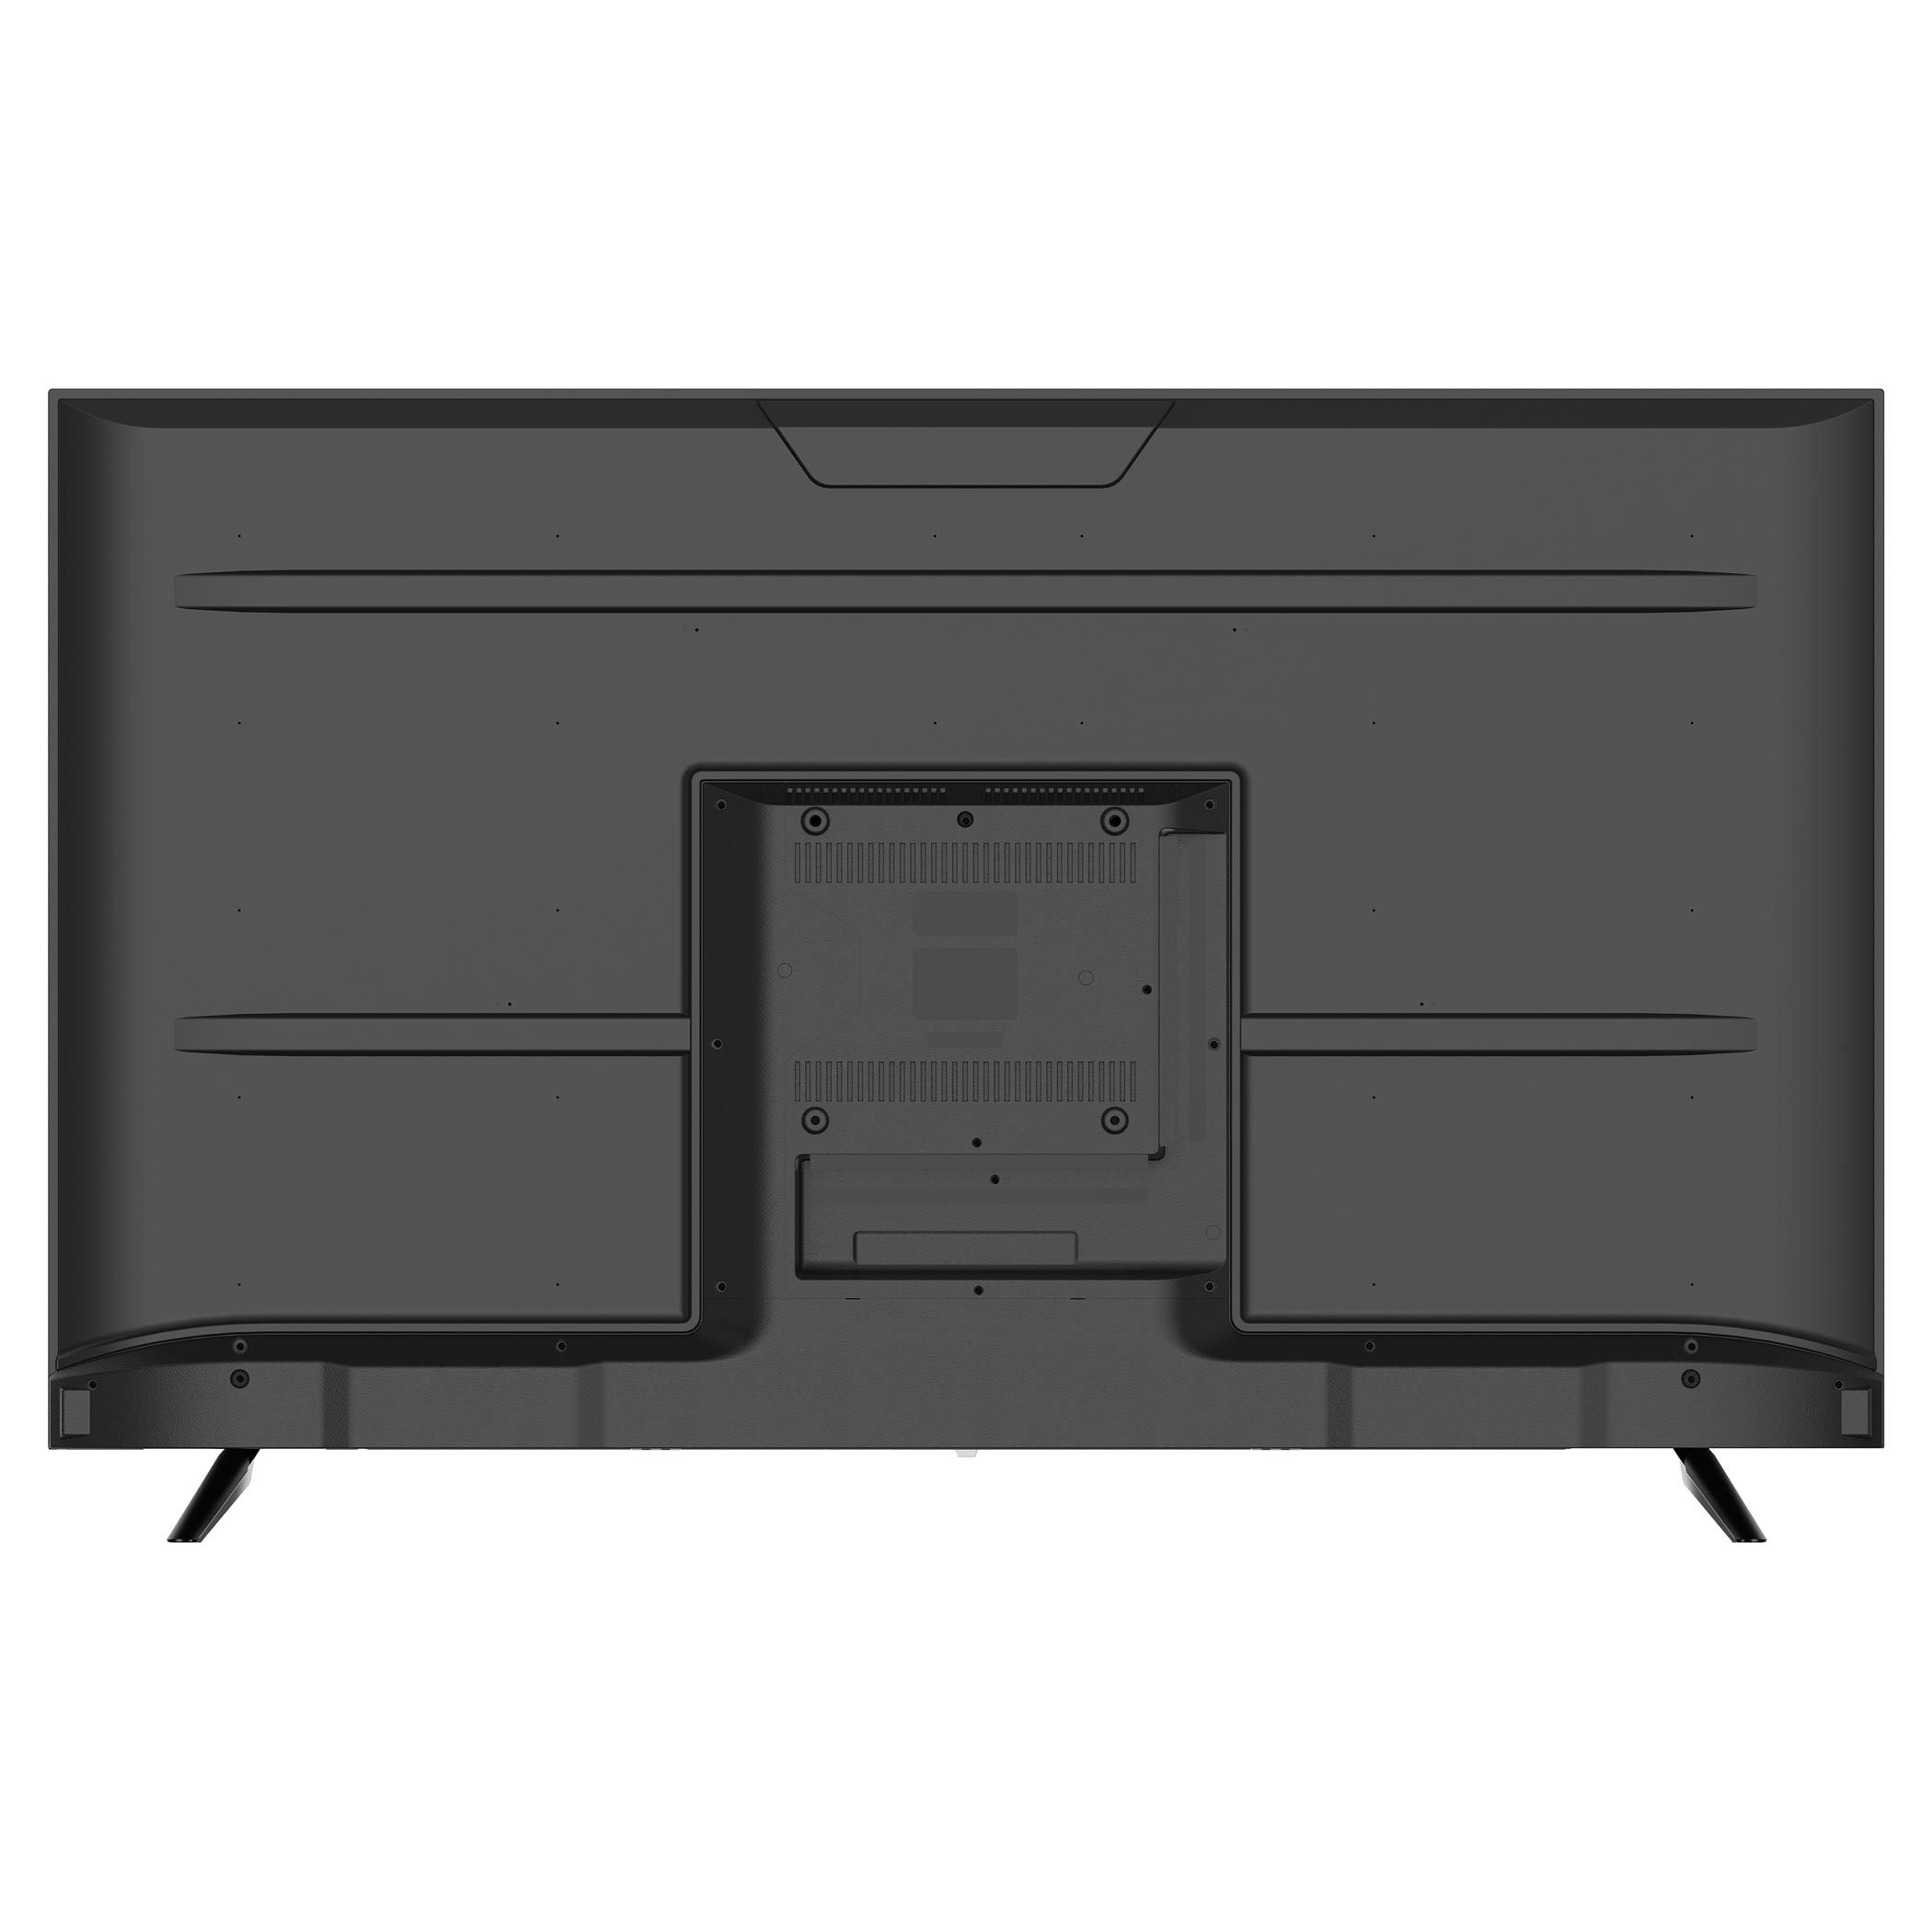 Google TV 55 model 55QS710AN